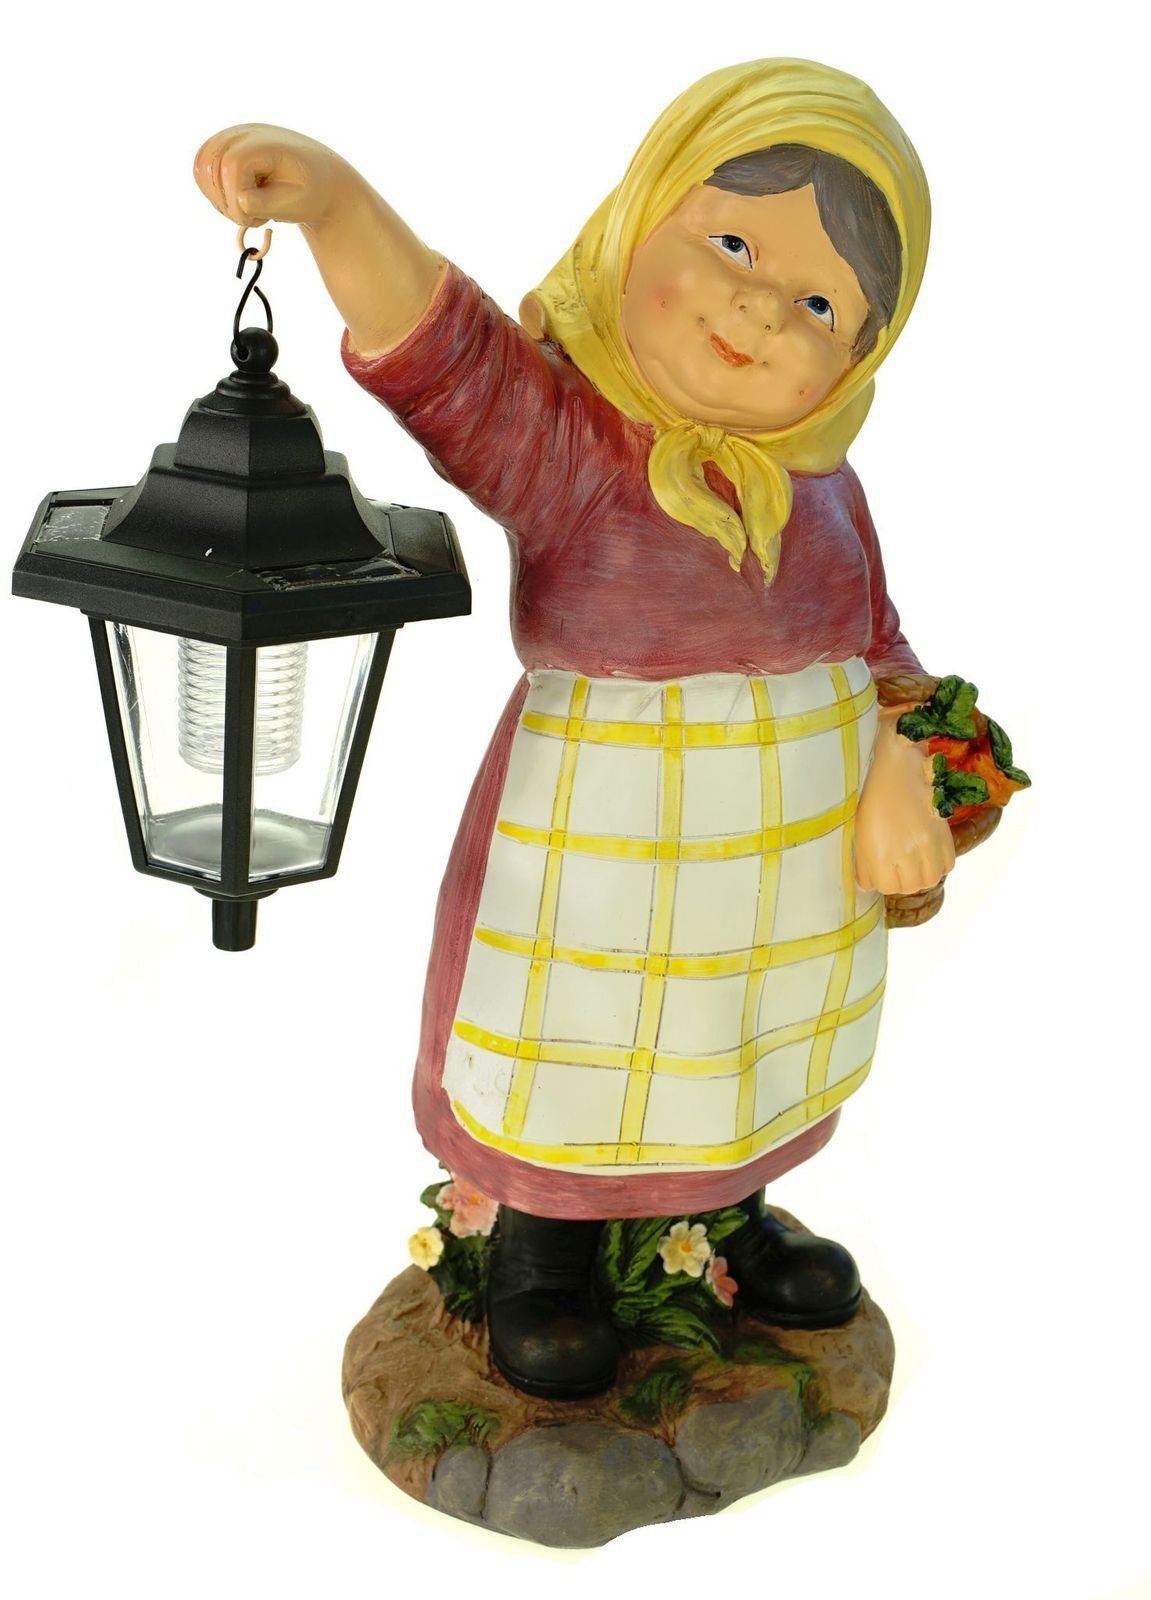 Kremers Schatzkiste Gartenfigur Oma Edeltraud mit Solarlaterne und Korb Figur Gartenfigur 38 cm Garten Ältere Dame